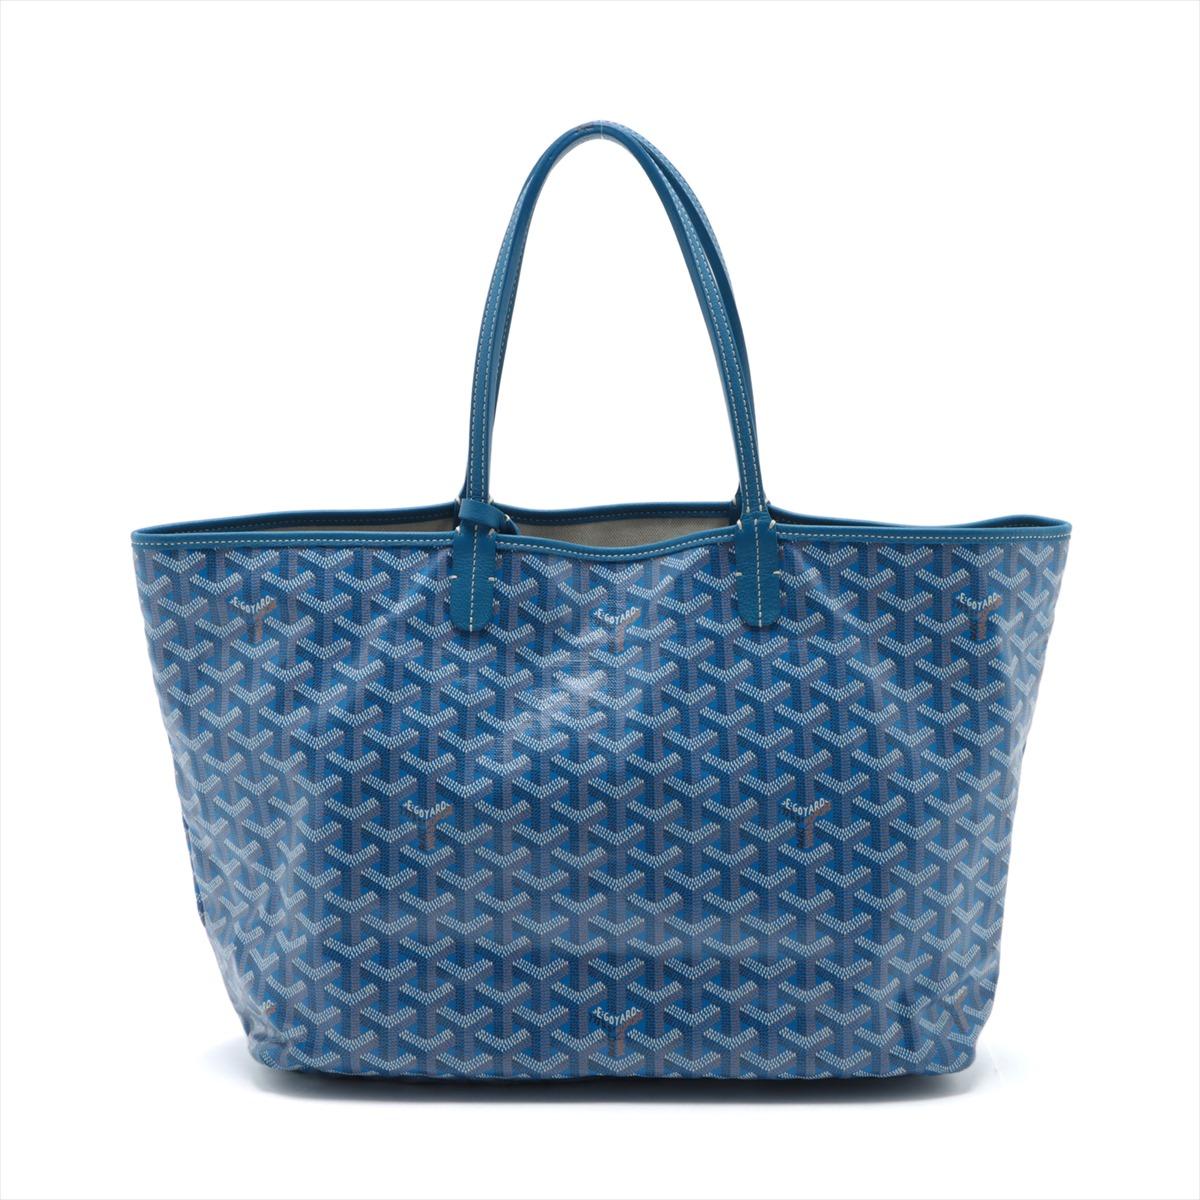 Le sac à main Goyard Saint Louis PM en bleu incarne l'élégance intemporelle et le luxe pratique. Méticuleusement confectionné par la prestigieuse Maison française Goyard, ce fourre-tout emblématique présente l'imprimé Chevron signature de la marque